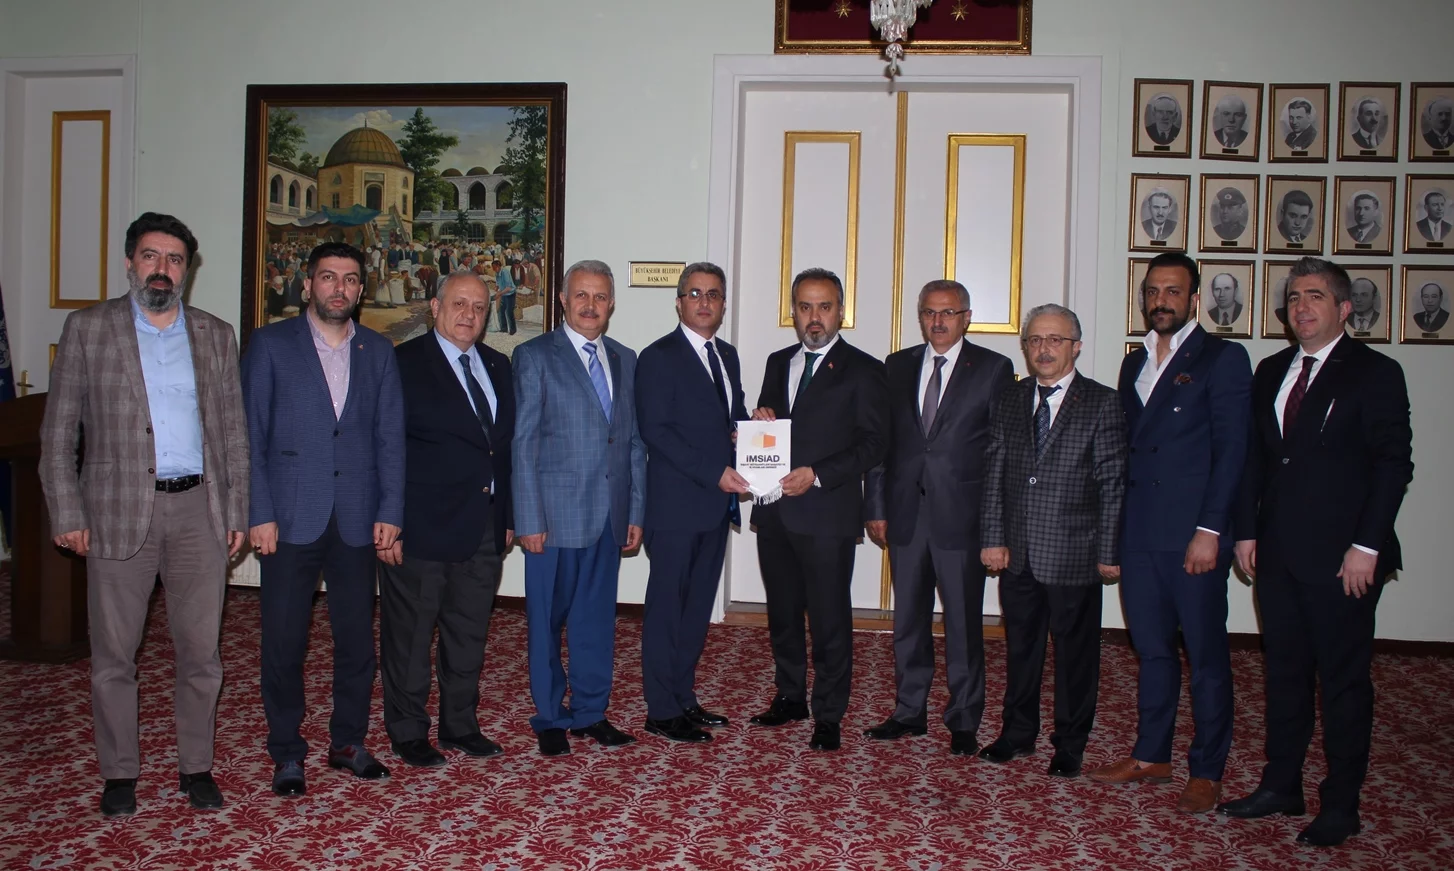 Mustafa Andıç: “Bursa, inşaat sektöründe de öncü bir kent olmalı”